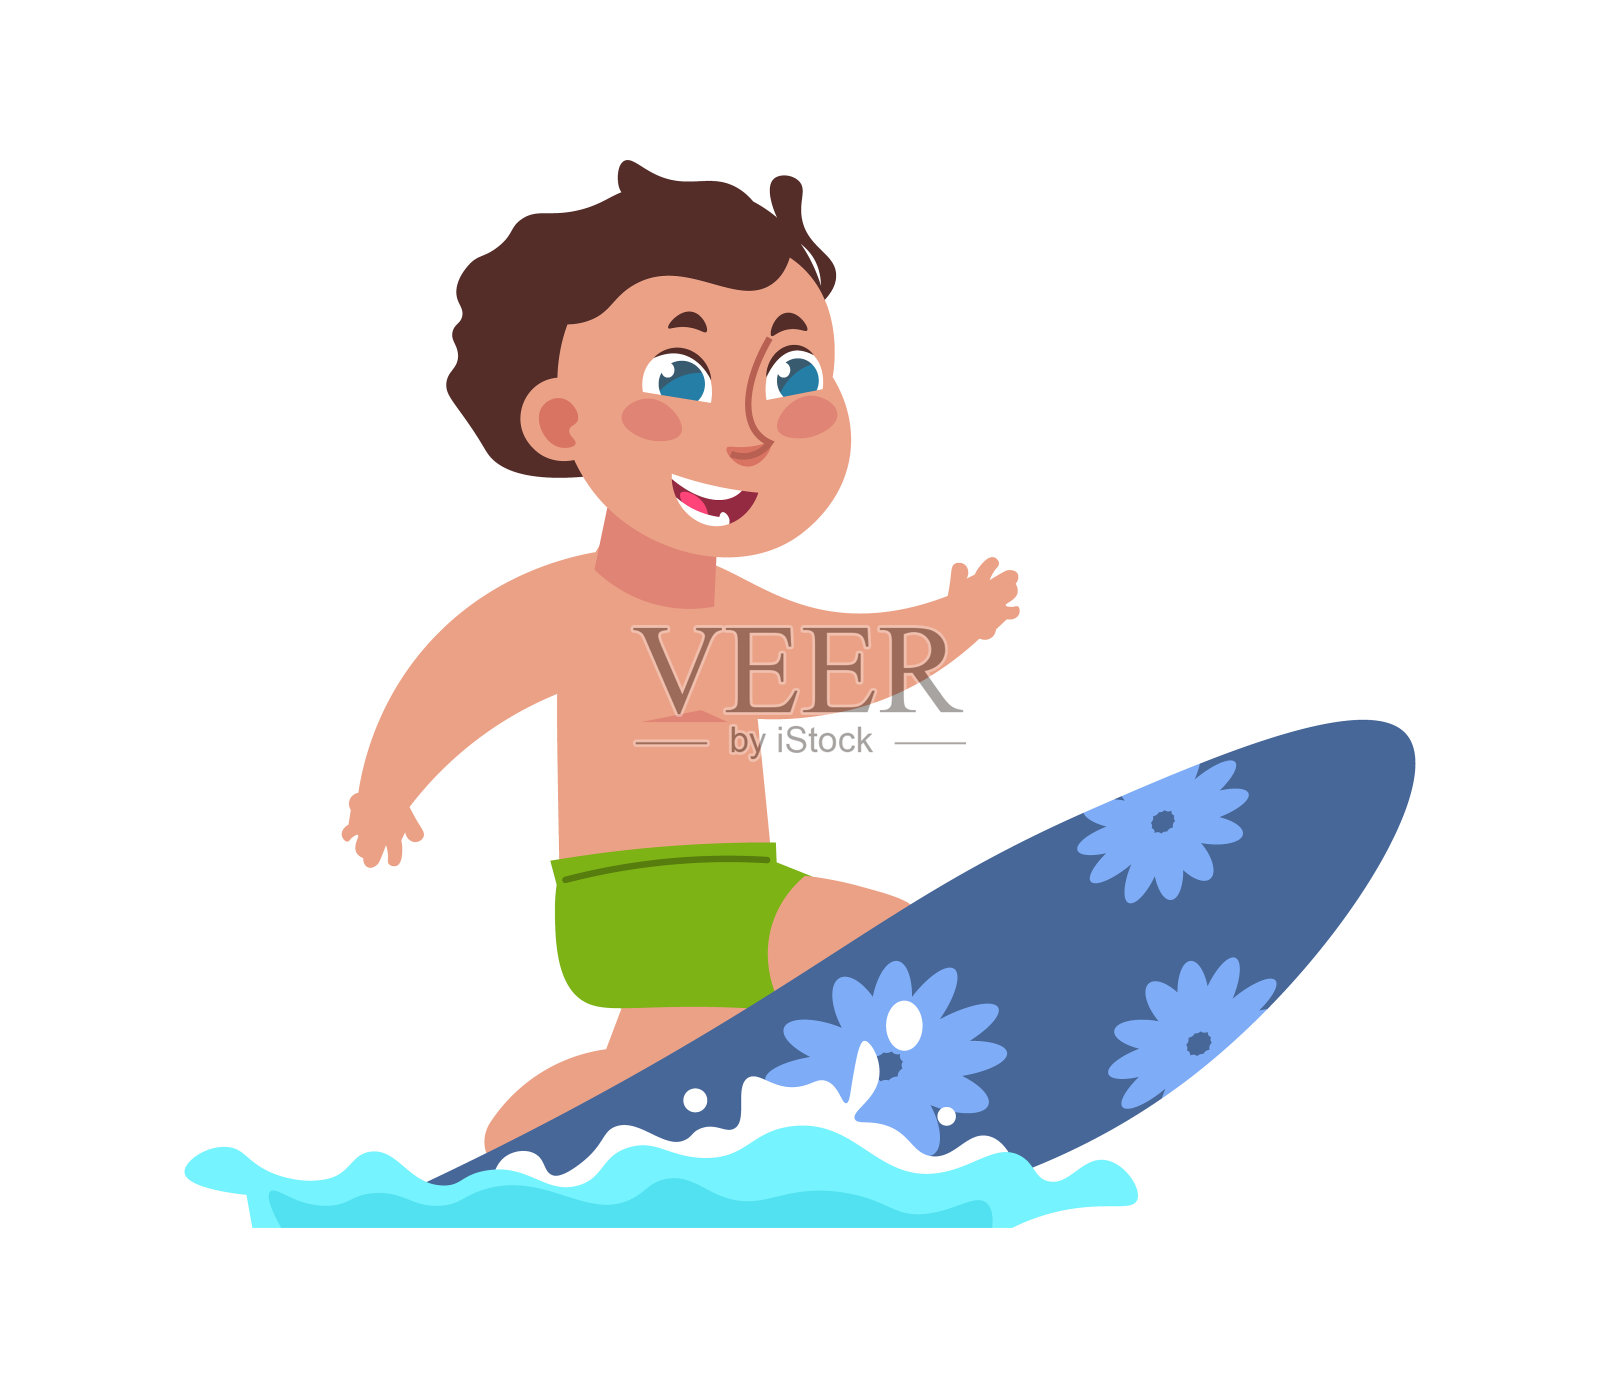 孩子上网。男孩在冲浪板上冲浪。极端的水上运动。在海滩积极的消遣。暑假娱乐休闲活动。矢量青少年在泳衣与冲浪板插画图片素材